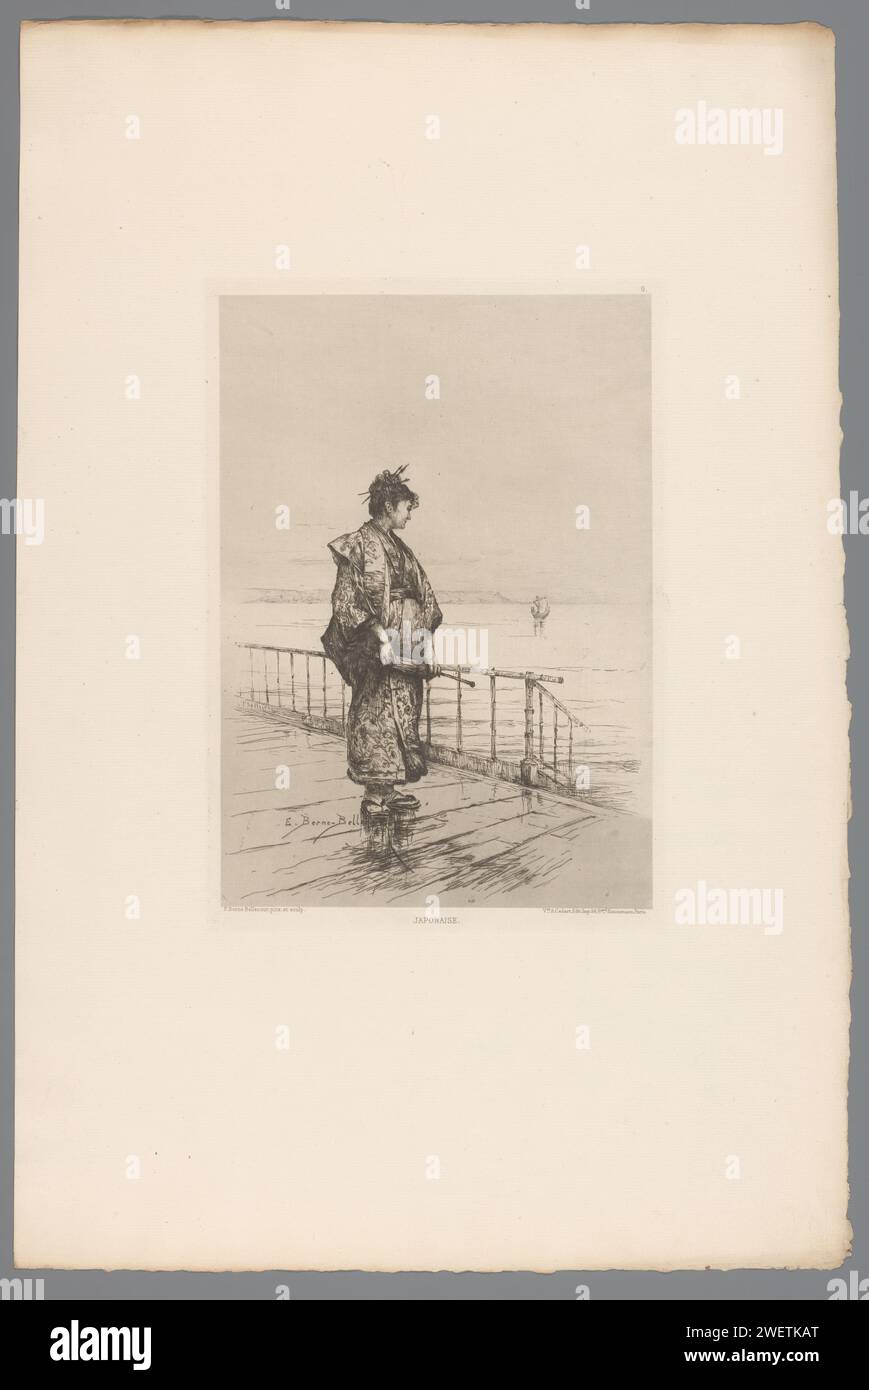 Stehende Frau in der japanischen Gestation, Etienne Prosper Bern-Bellecour, 1877 Druckpapier-Ätzung / Trockenspitze Erwachsene Frau. Wasserlauf. Japanisch (+ Kostüm). Sonnenschirm, Sonnenschirm Stockfoto